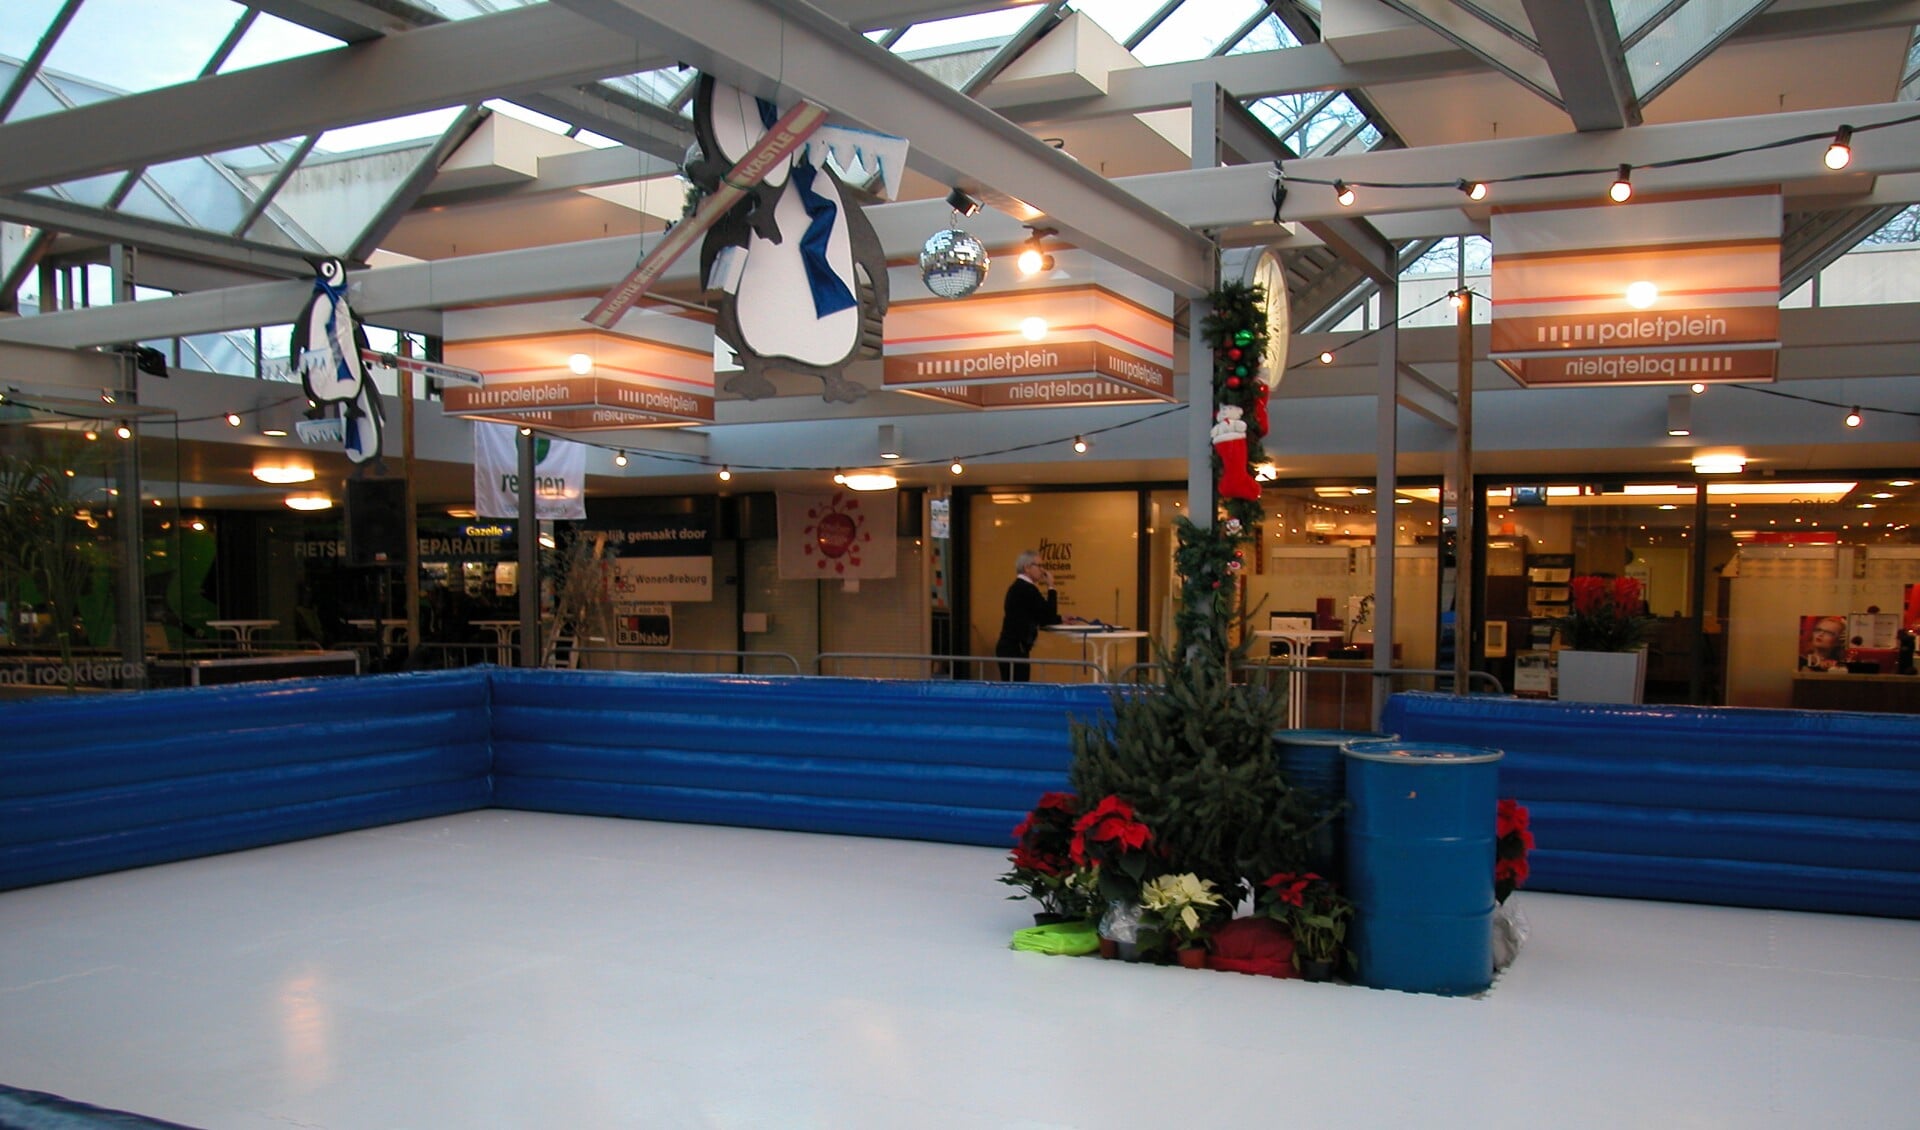 Mill krijgt een ijsbaan tijdens Winterbeleving op 11 december.